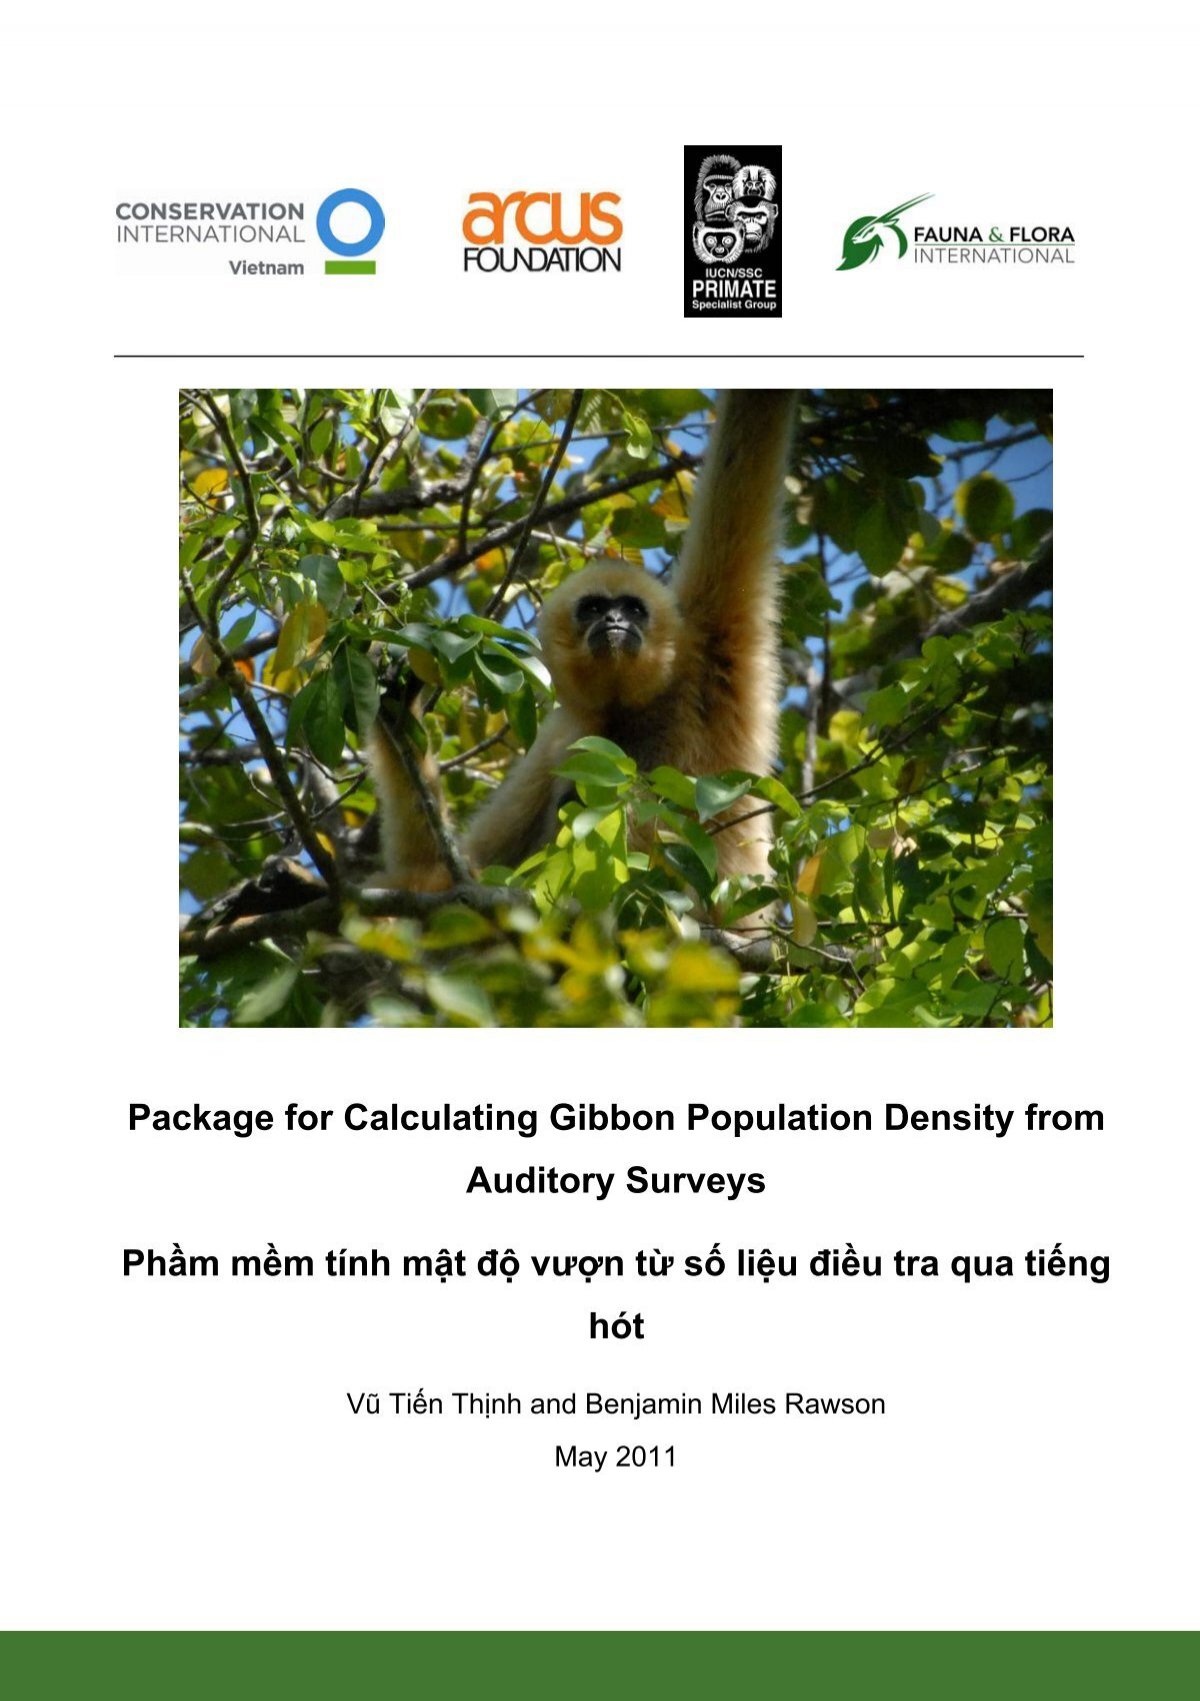 Bạn có muốn tìm hiểu về mật độ dân số của loài vượn Gibbon? Hãy xem hình ảnh liên quan và cùng khám phá về điều đó. Sự phong phú và đa dạng của loài vượn này sẽ khiến bạn ngạc nhiên đấy.